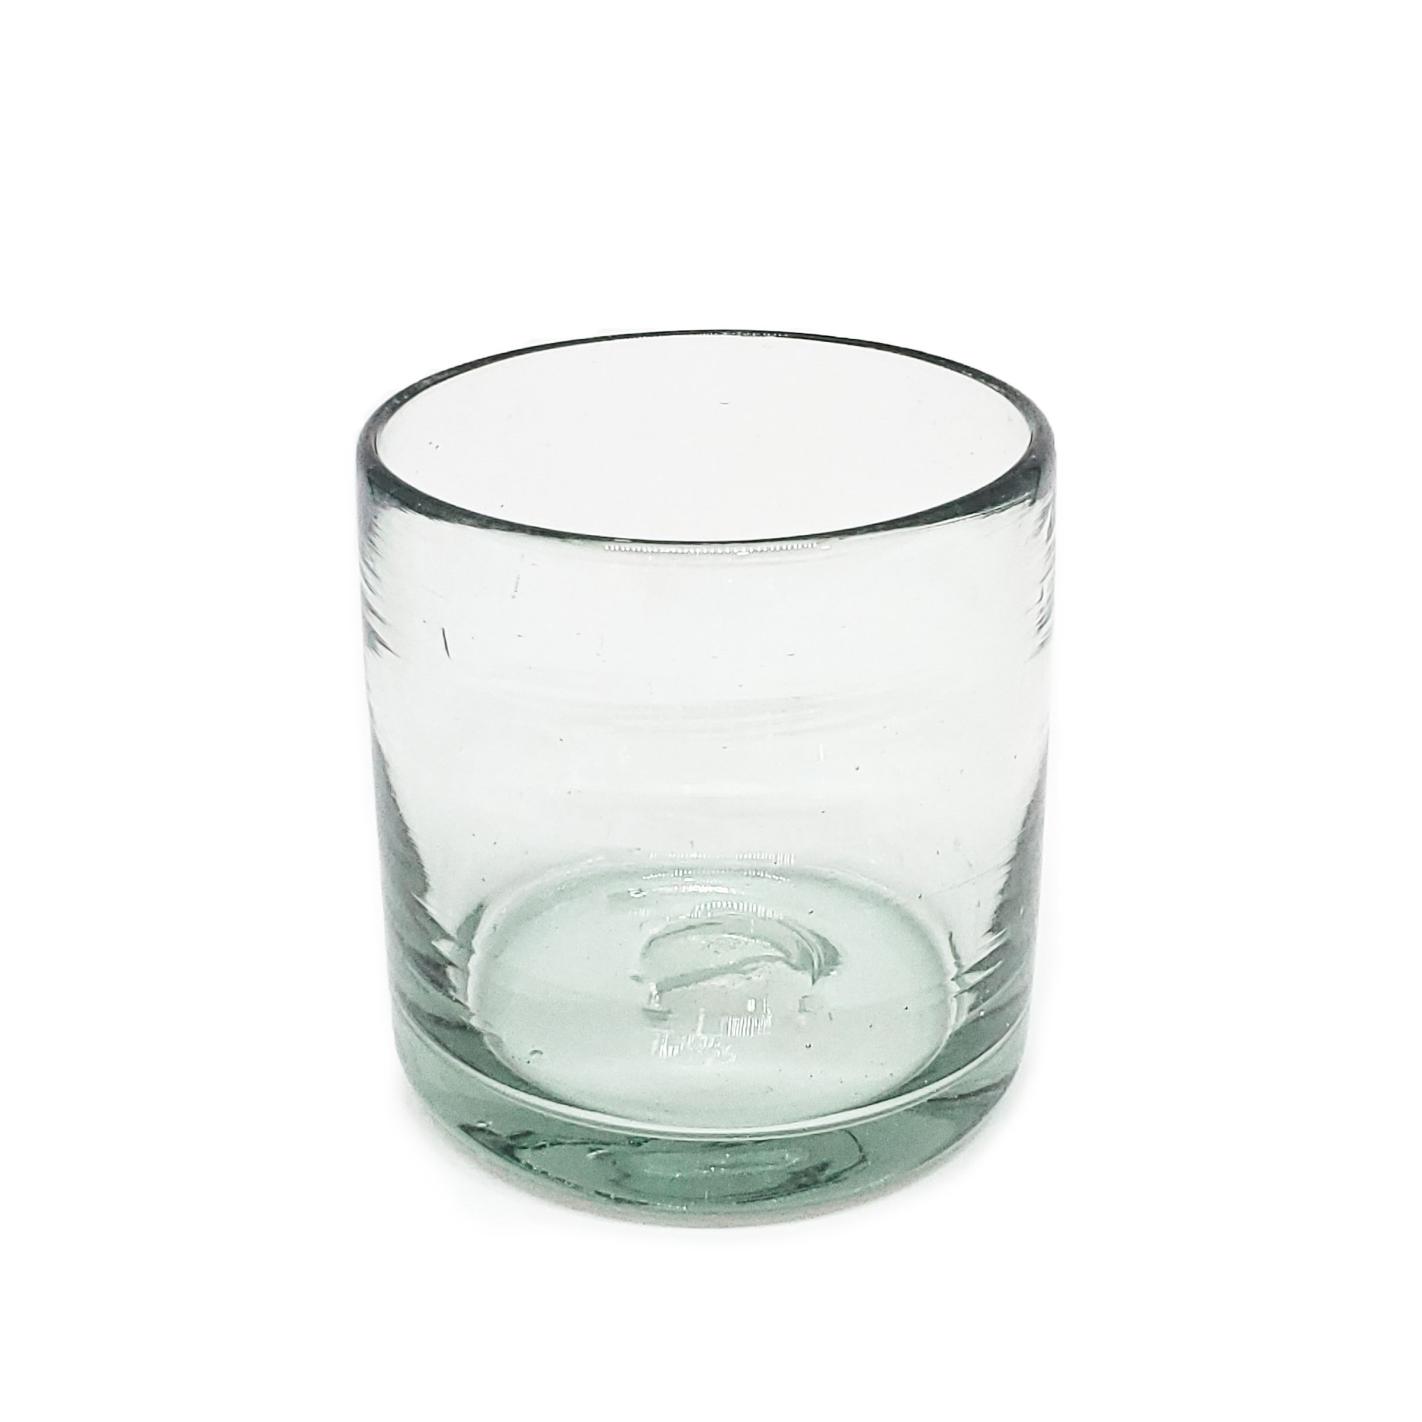 Ofertas / vasos DOF 8oz Transparentes / stos artesanales vasos le darn un toque clsico a su bebida favorita.